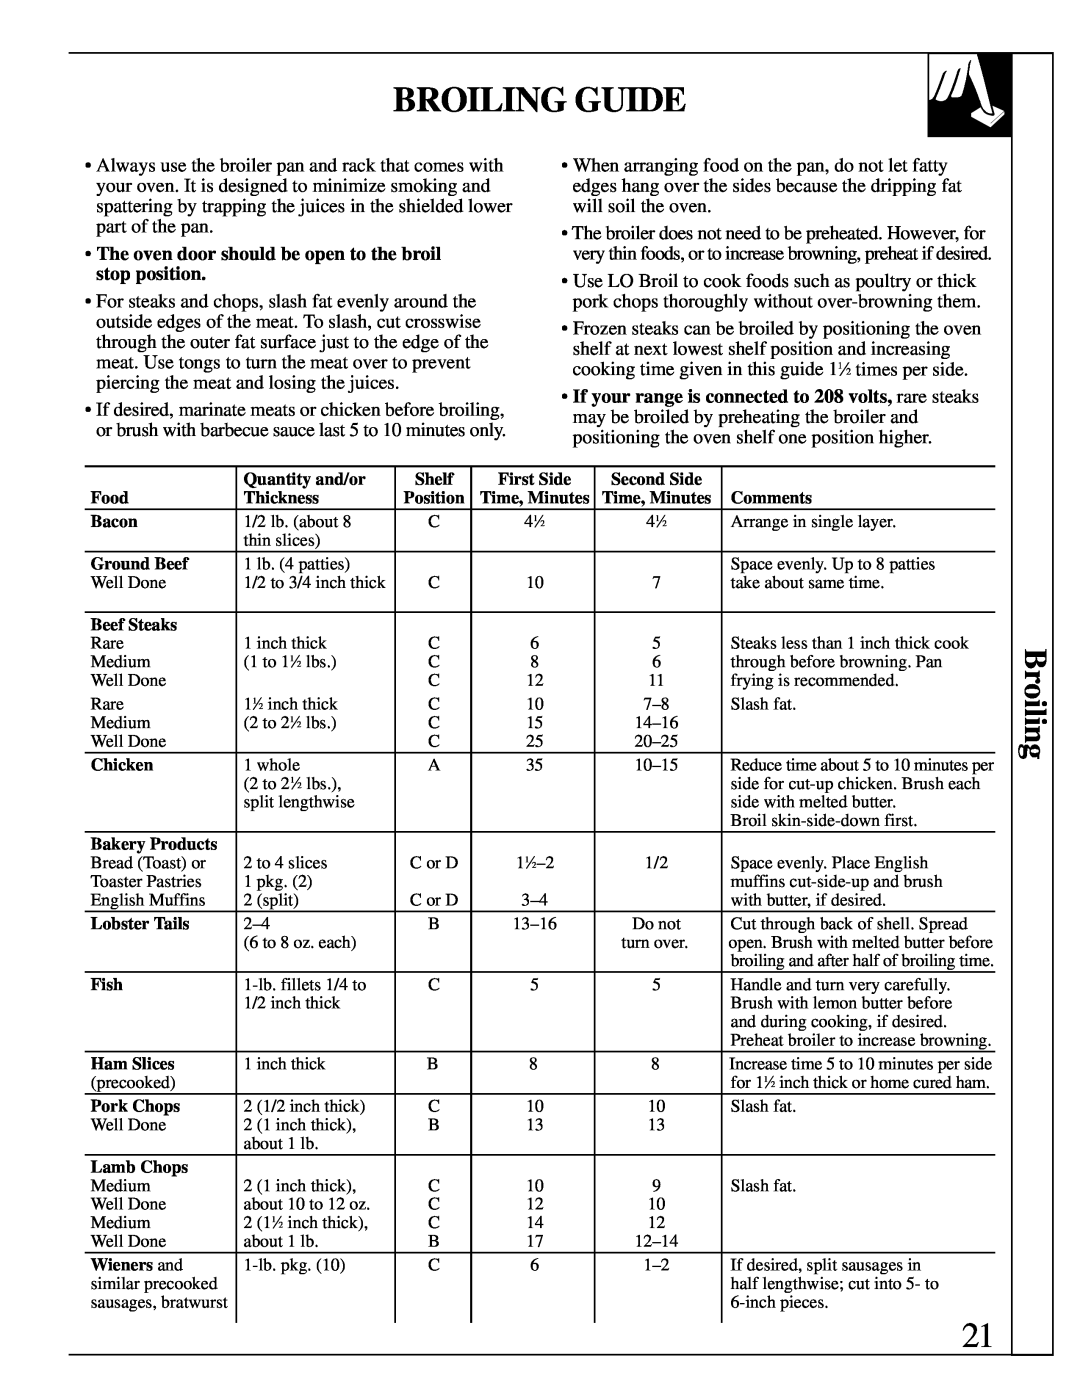 GE JDP36, JDP37 manual Broiling Guide 